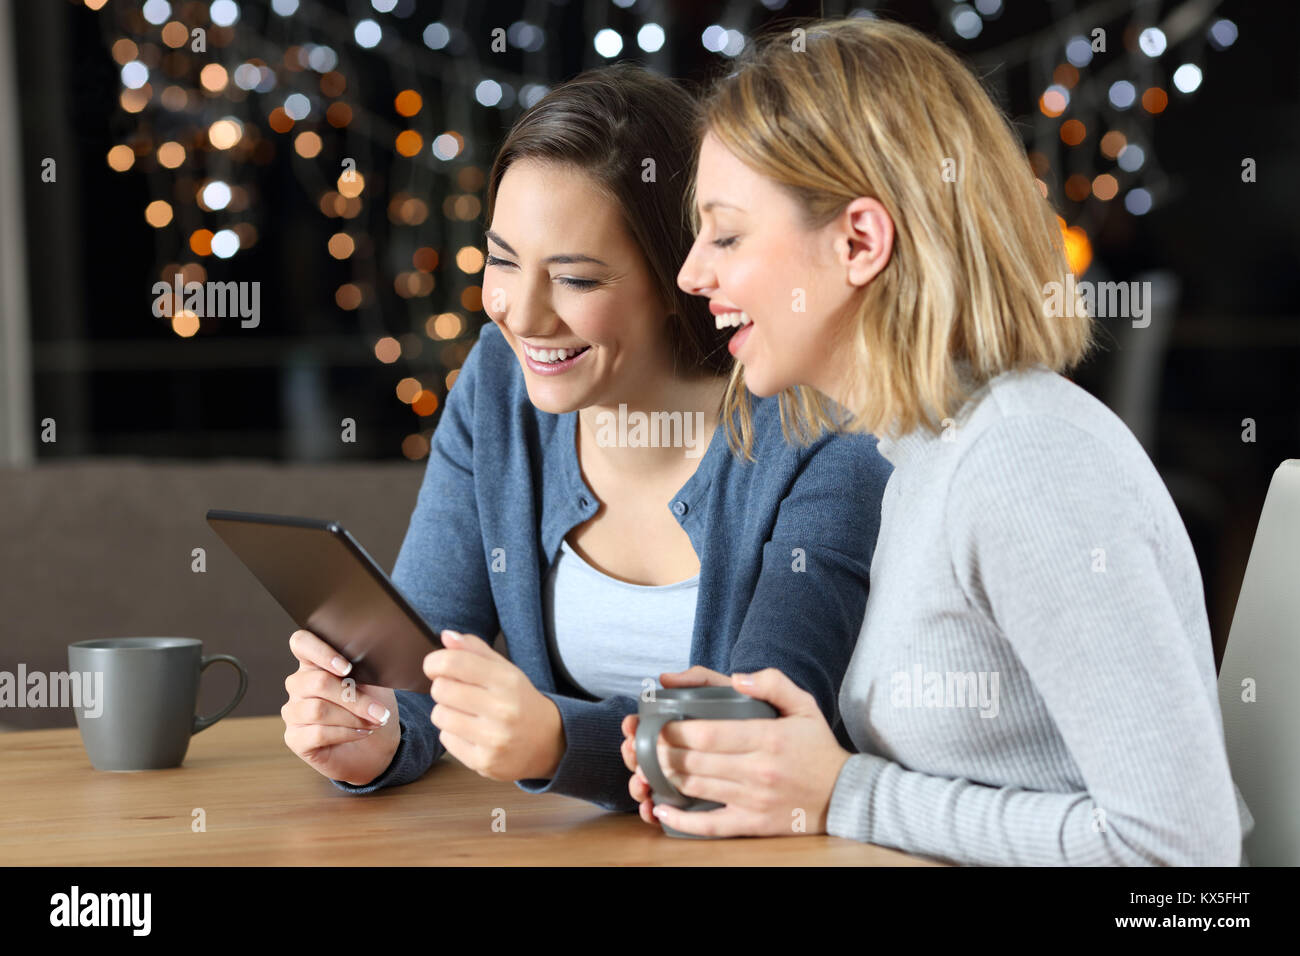 Due felici gli amici a guardare i contenuti multimediali in un tablet seduti a un tavolo a casa di notte Foto Stock